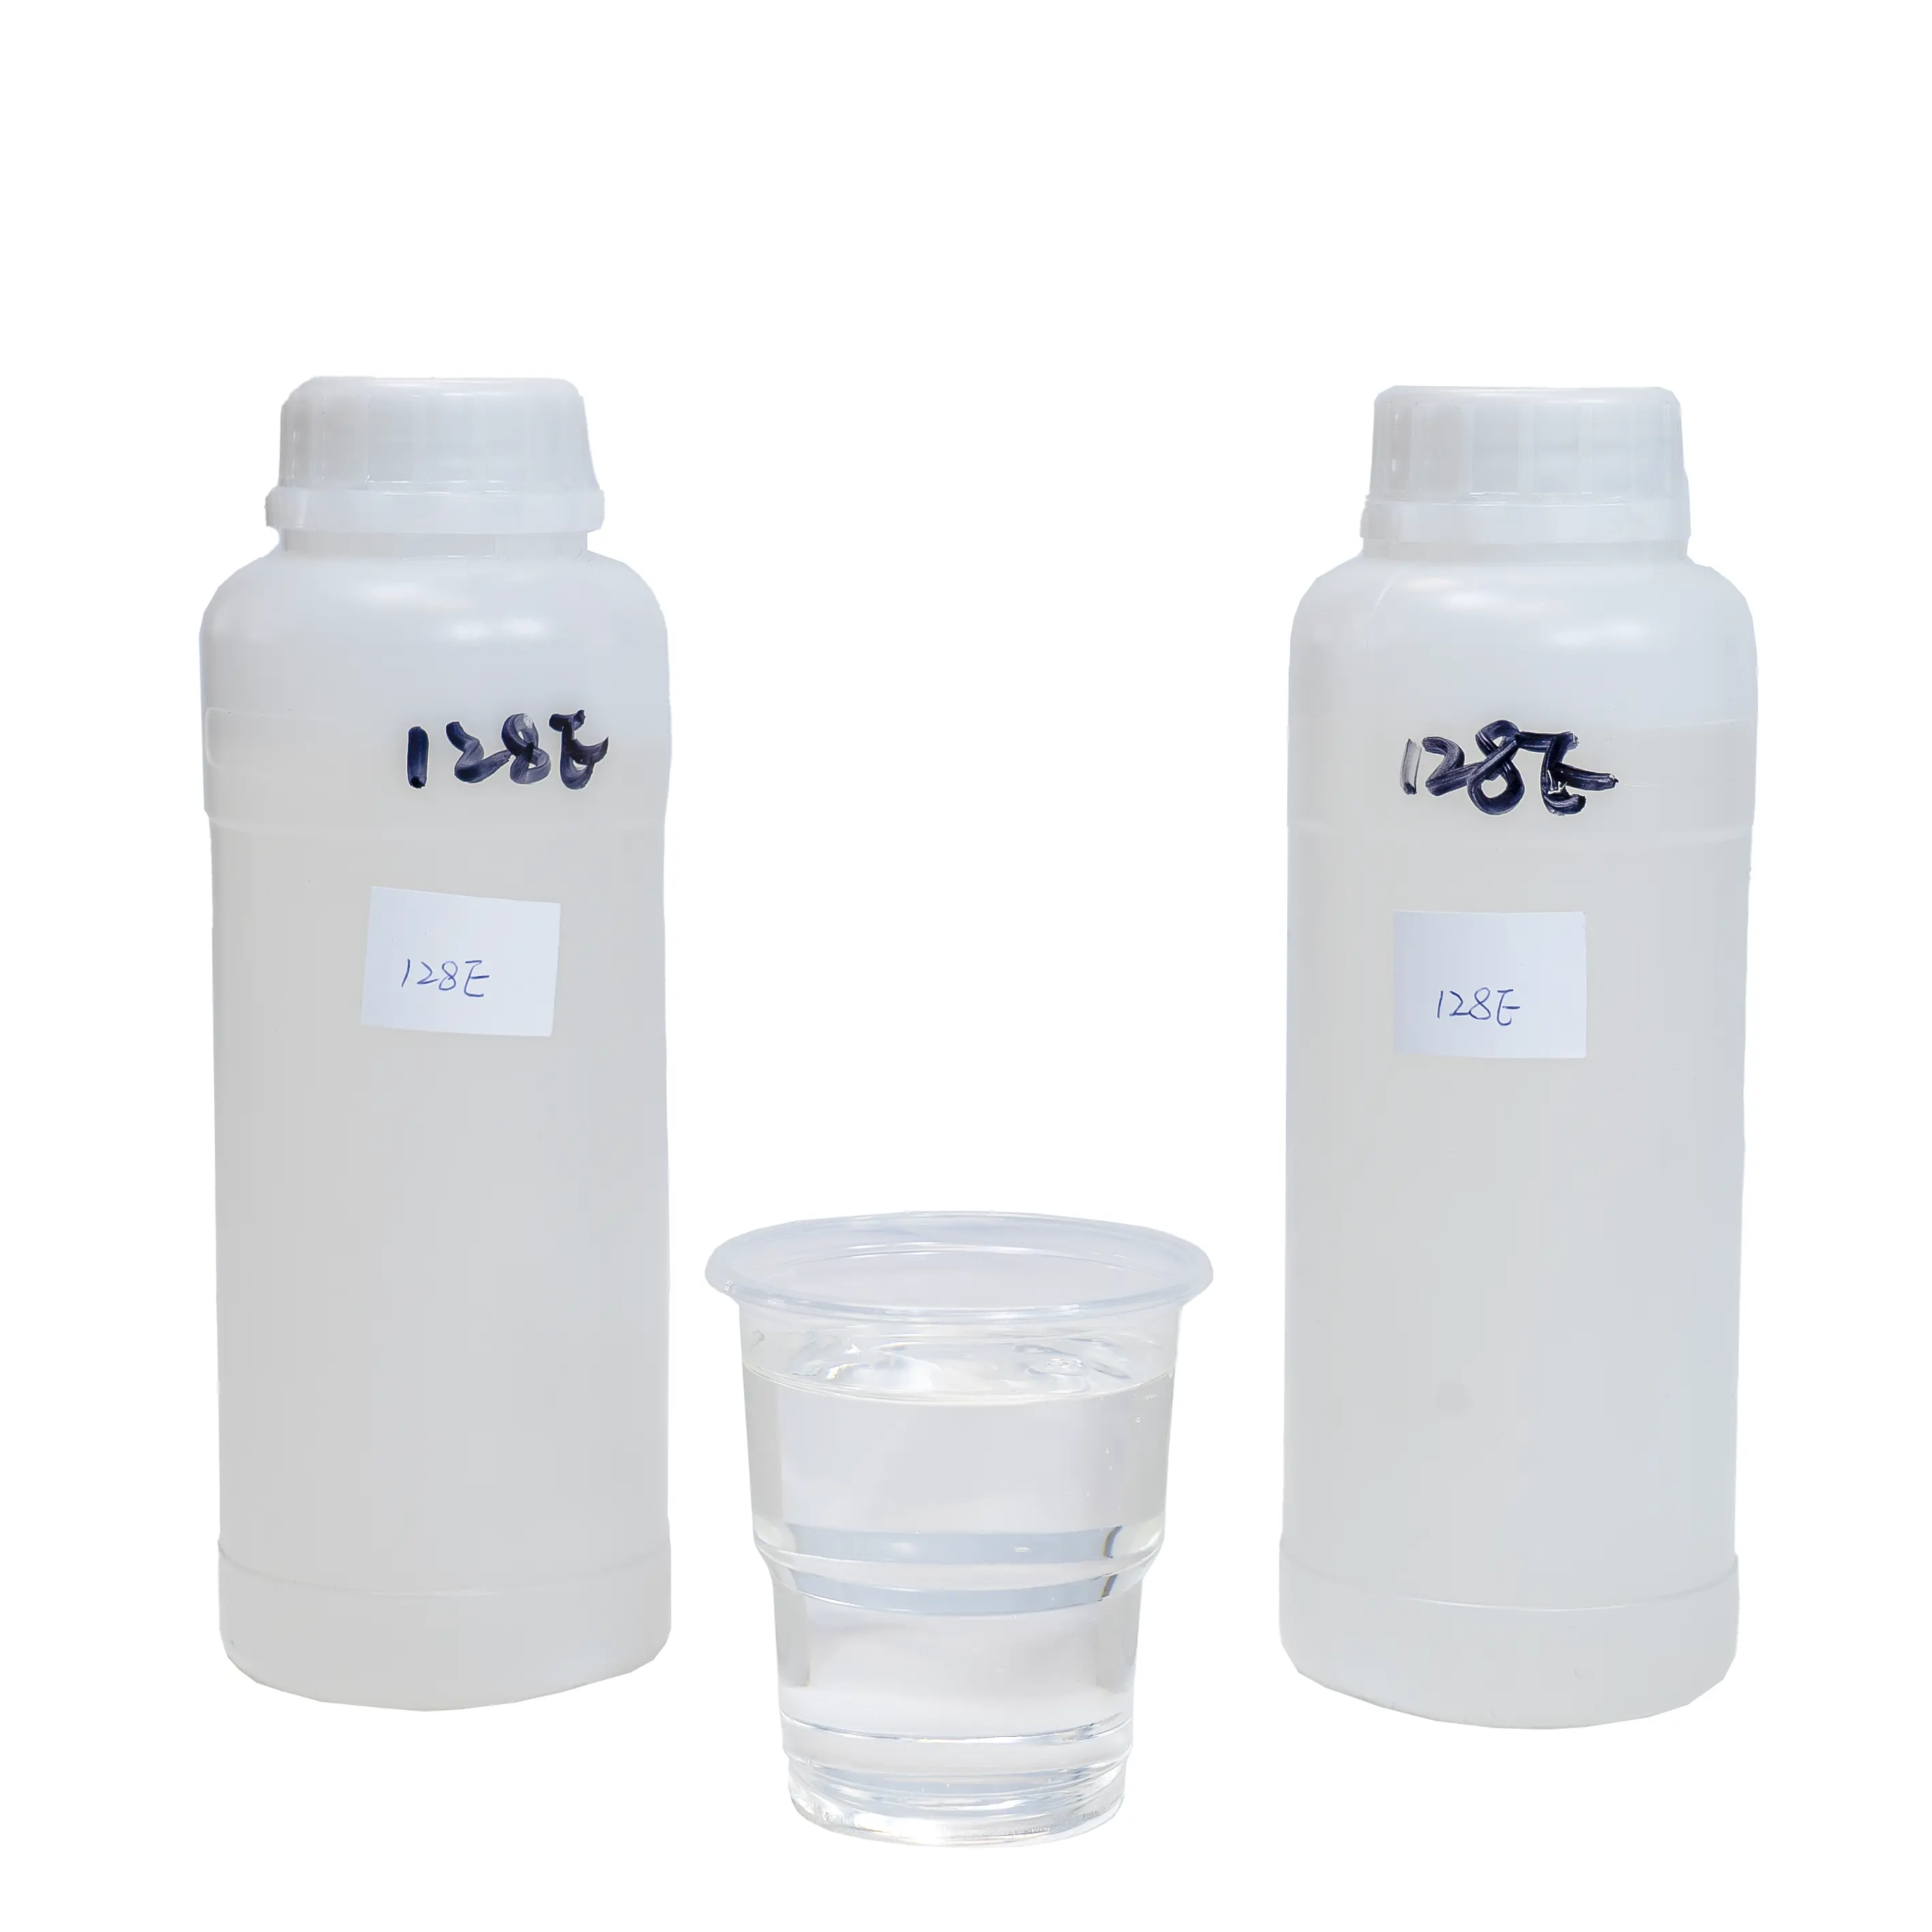 リバーテーブル/アートクラフトウッド/家具用のアルカリ (C12-C14) グリシジルエーテルを含む低粘度128E液体エポキシ樹脂